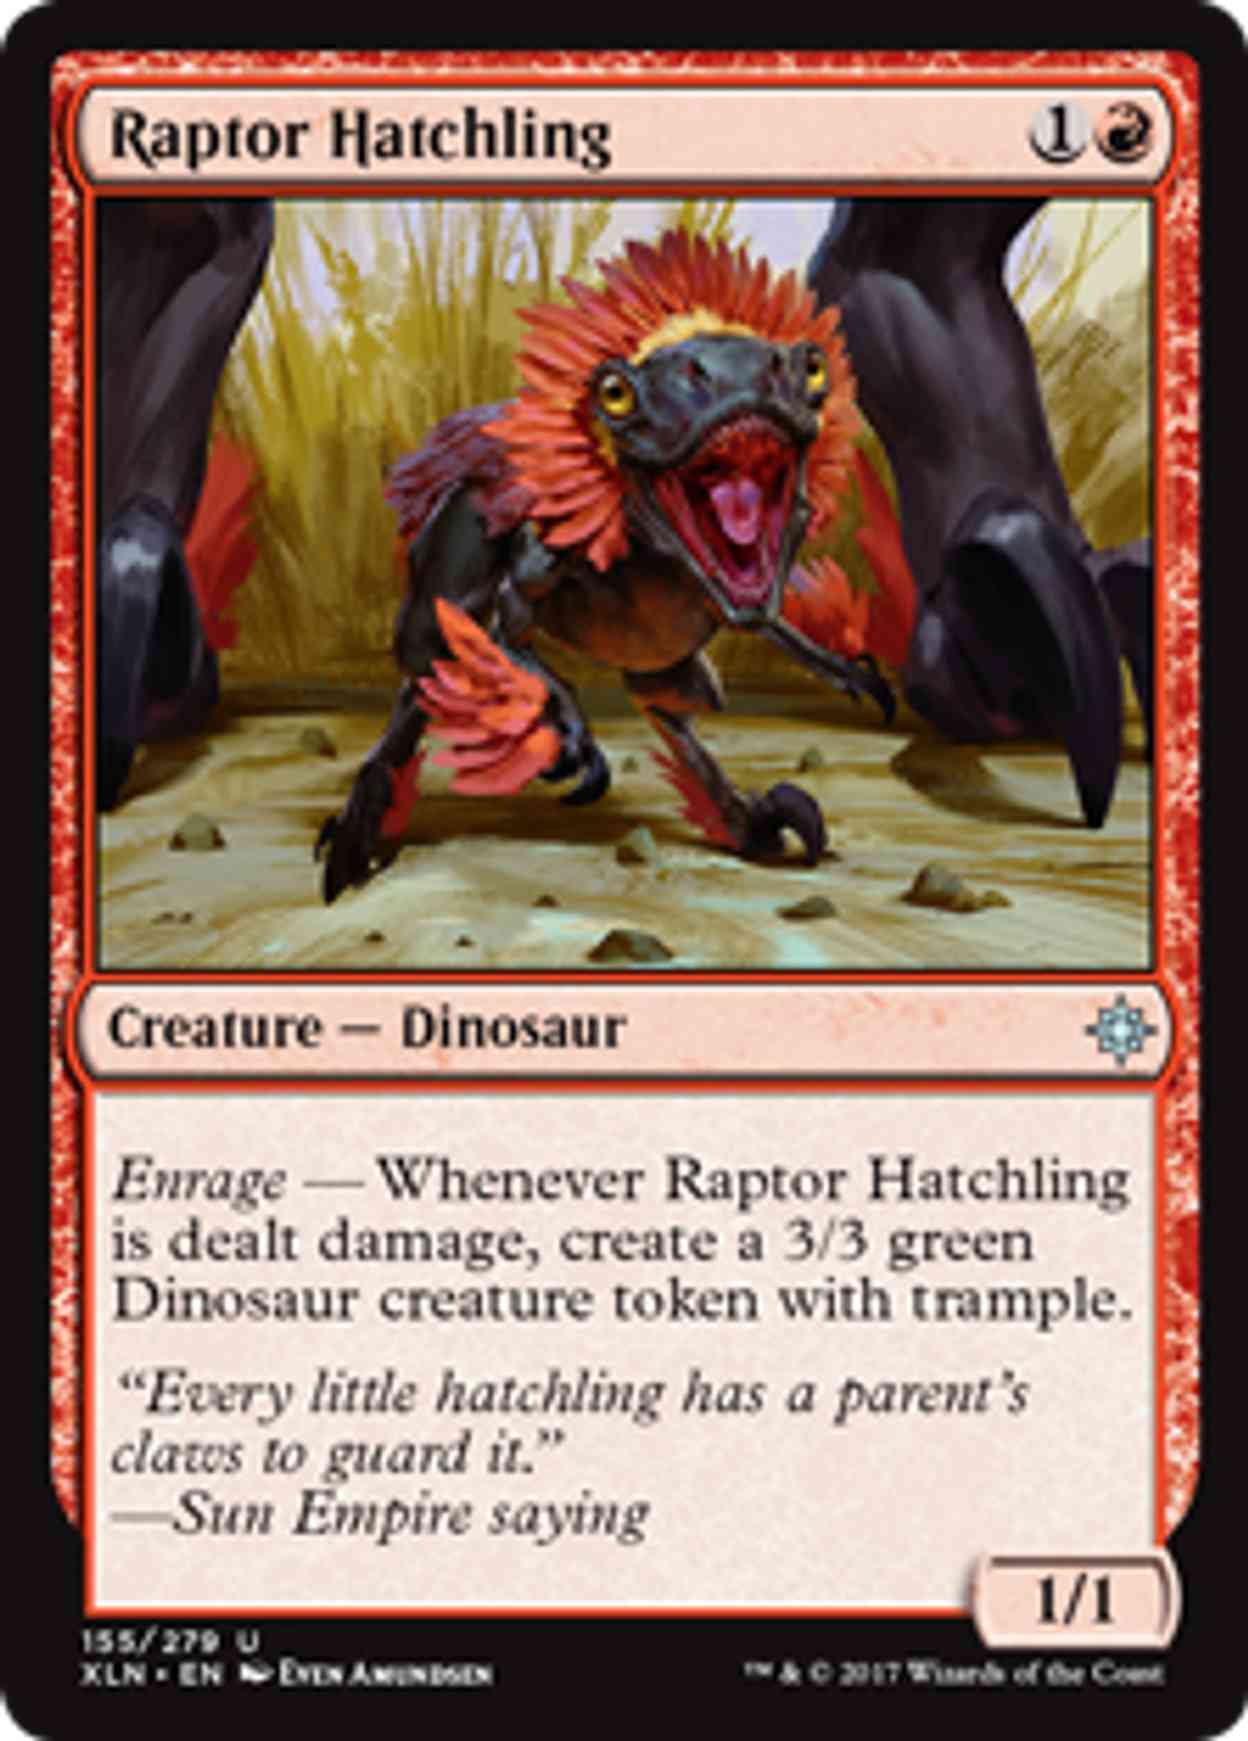 Raptor Hatchling magic card front